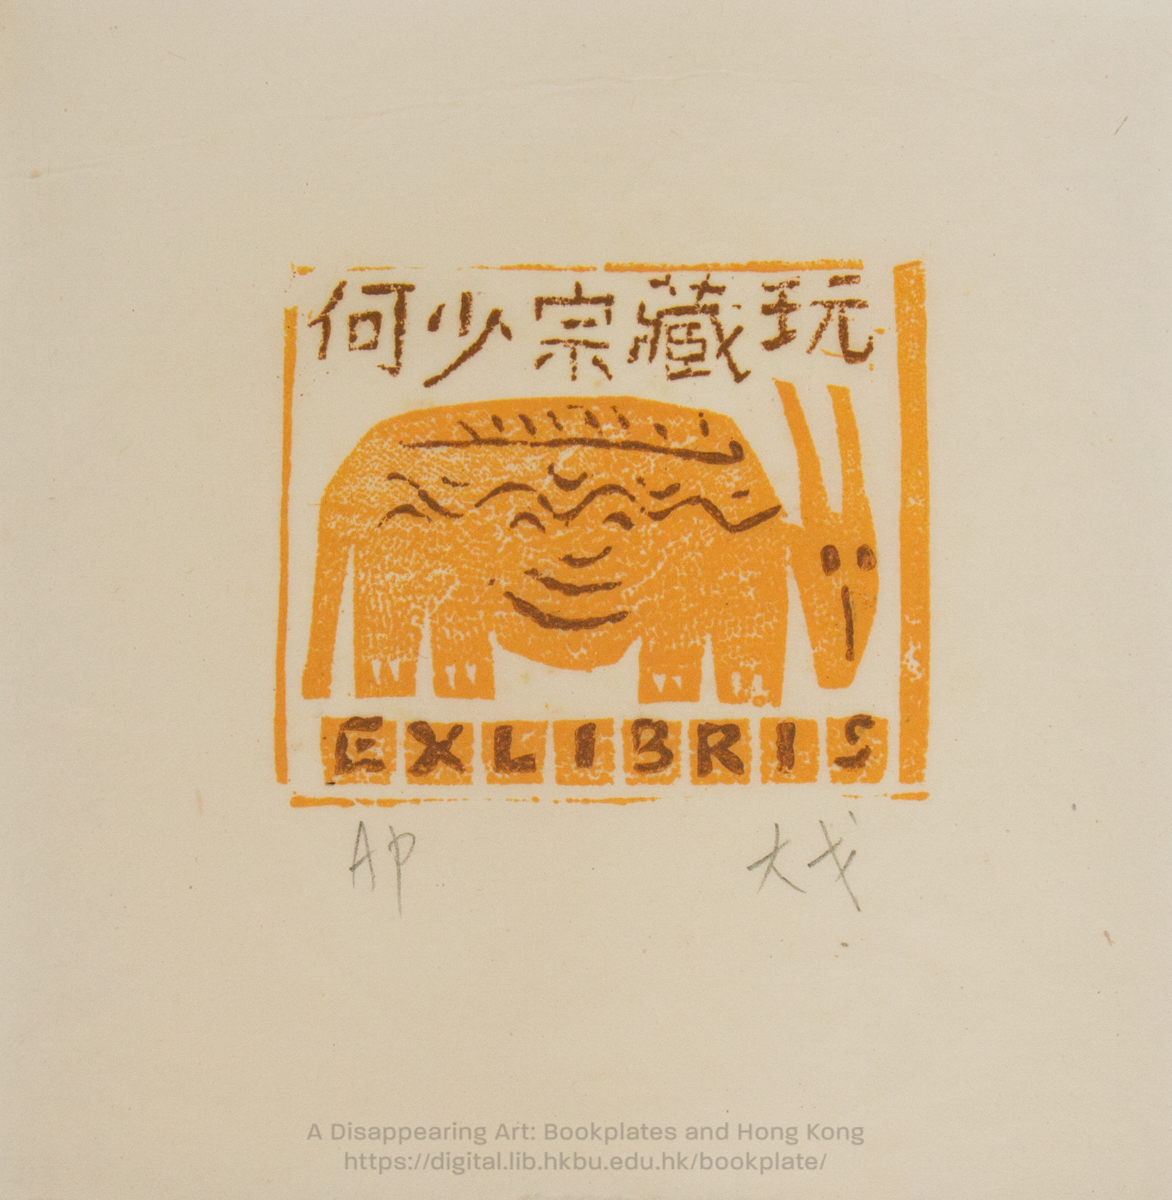 bookplate 藏書票 Ex Libris Association CHENG, Taigo 鄭大戈